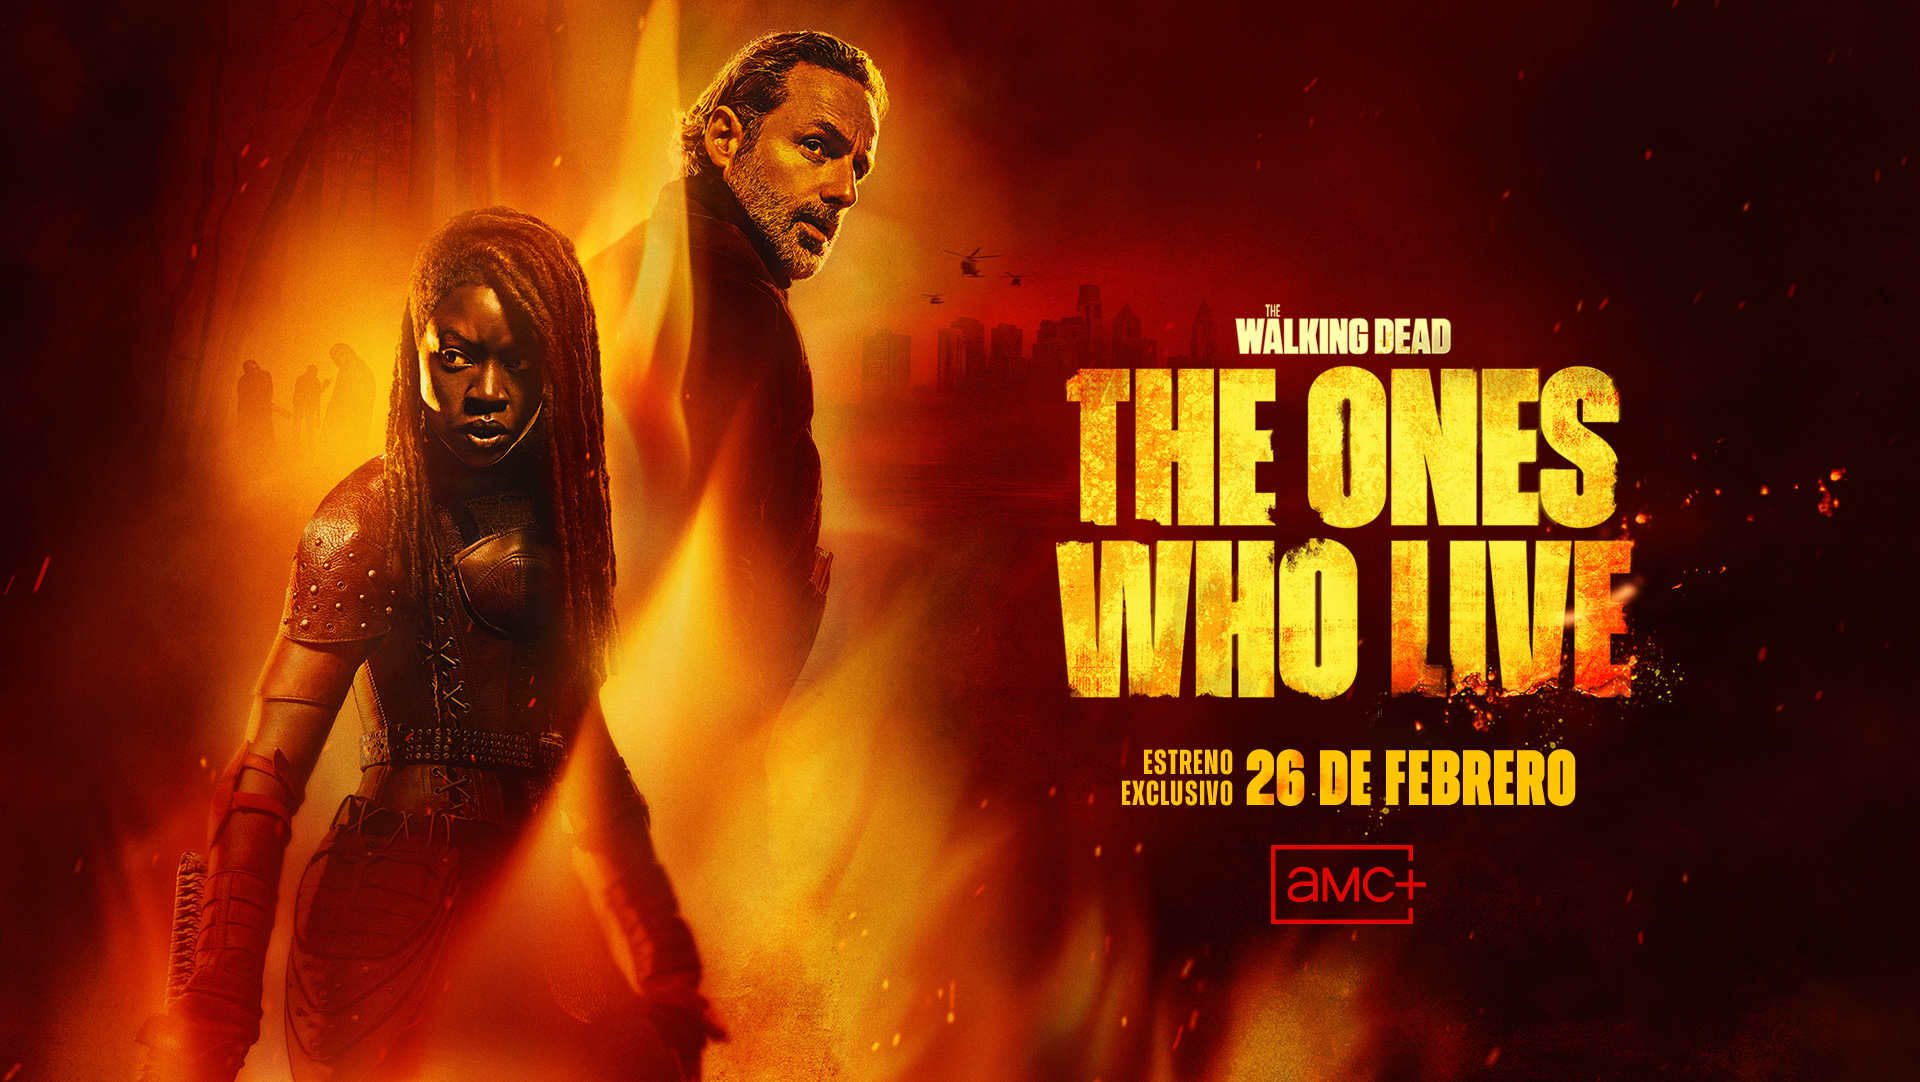 El servicio de streaming AMC+ estrena en exclusiva ‘The Walking Dead: The Ones Who Live’